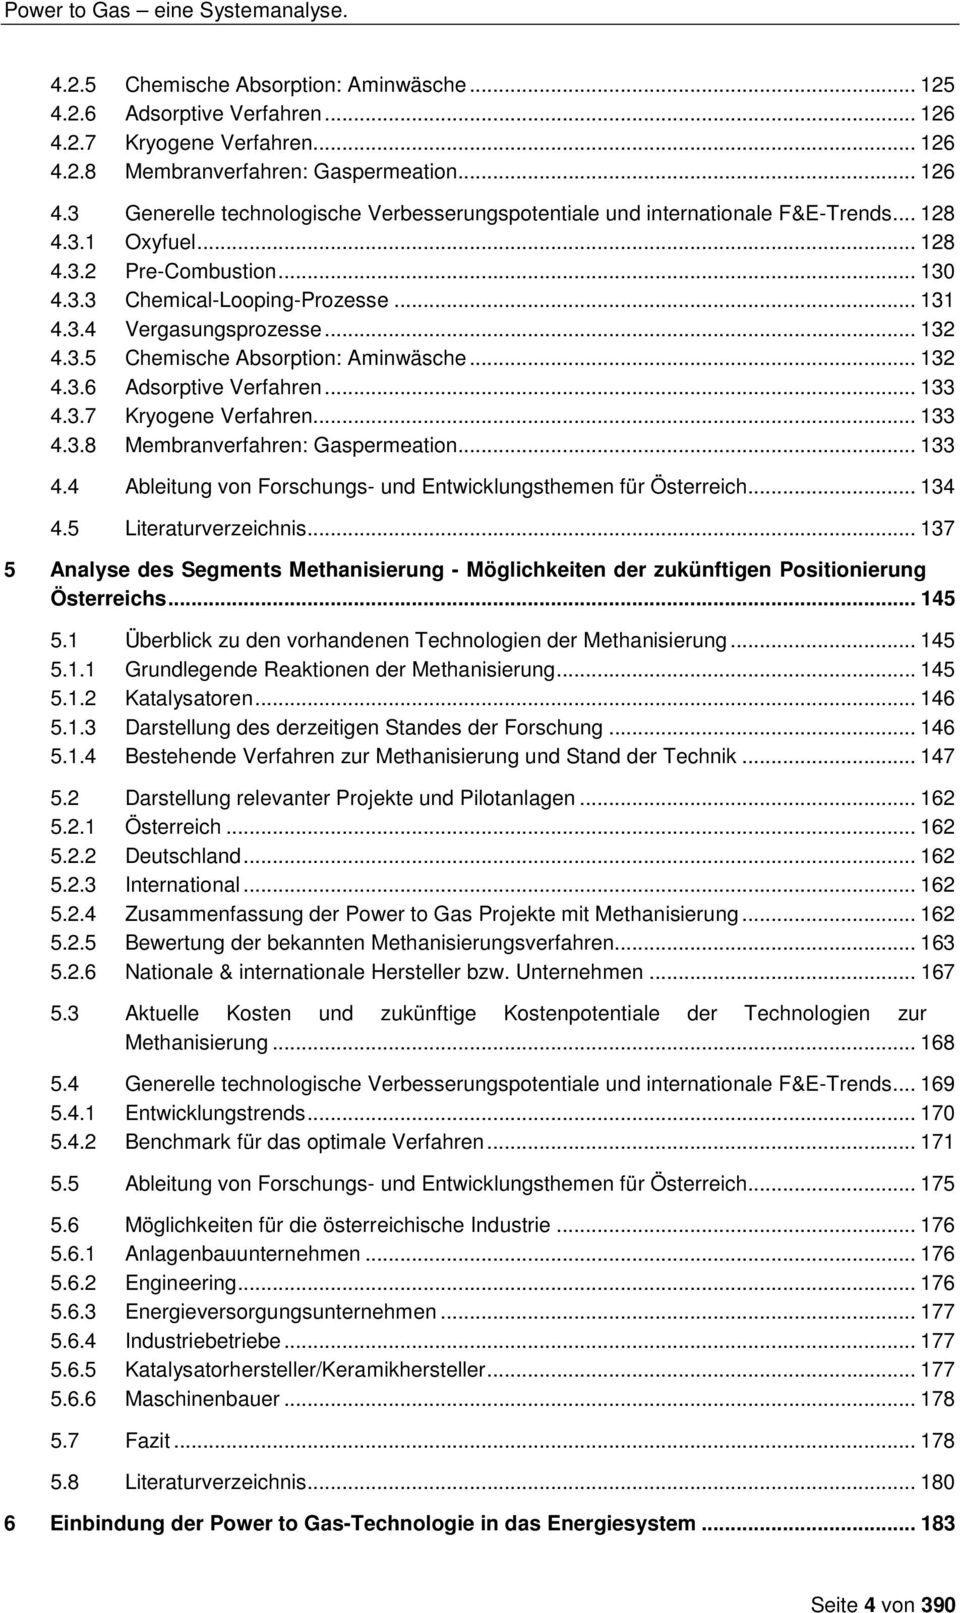 .. 133 4.3.7 Kryogene Verfahren... 133 4.3.8 Membranverfahren: Gaspermeation... 133 4.4 Ableitung von Forschungs- und Entwicklungsthemen für Österreich... 134 4.5 Literaturverzeichnis.